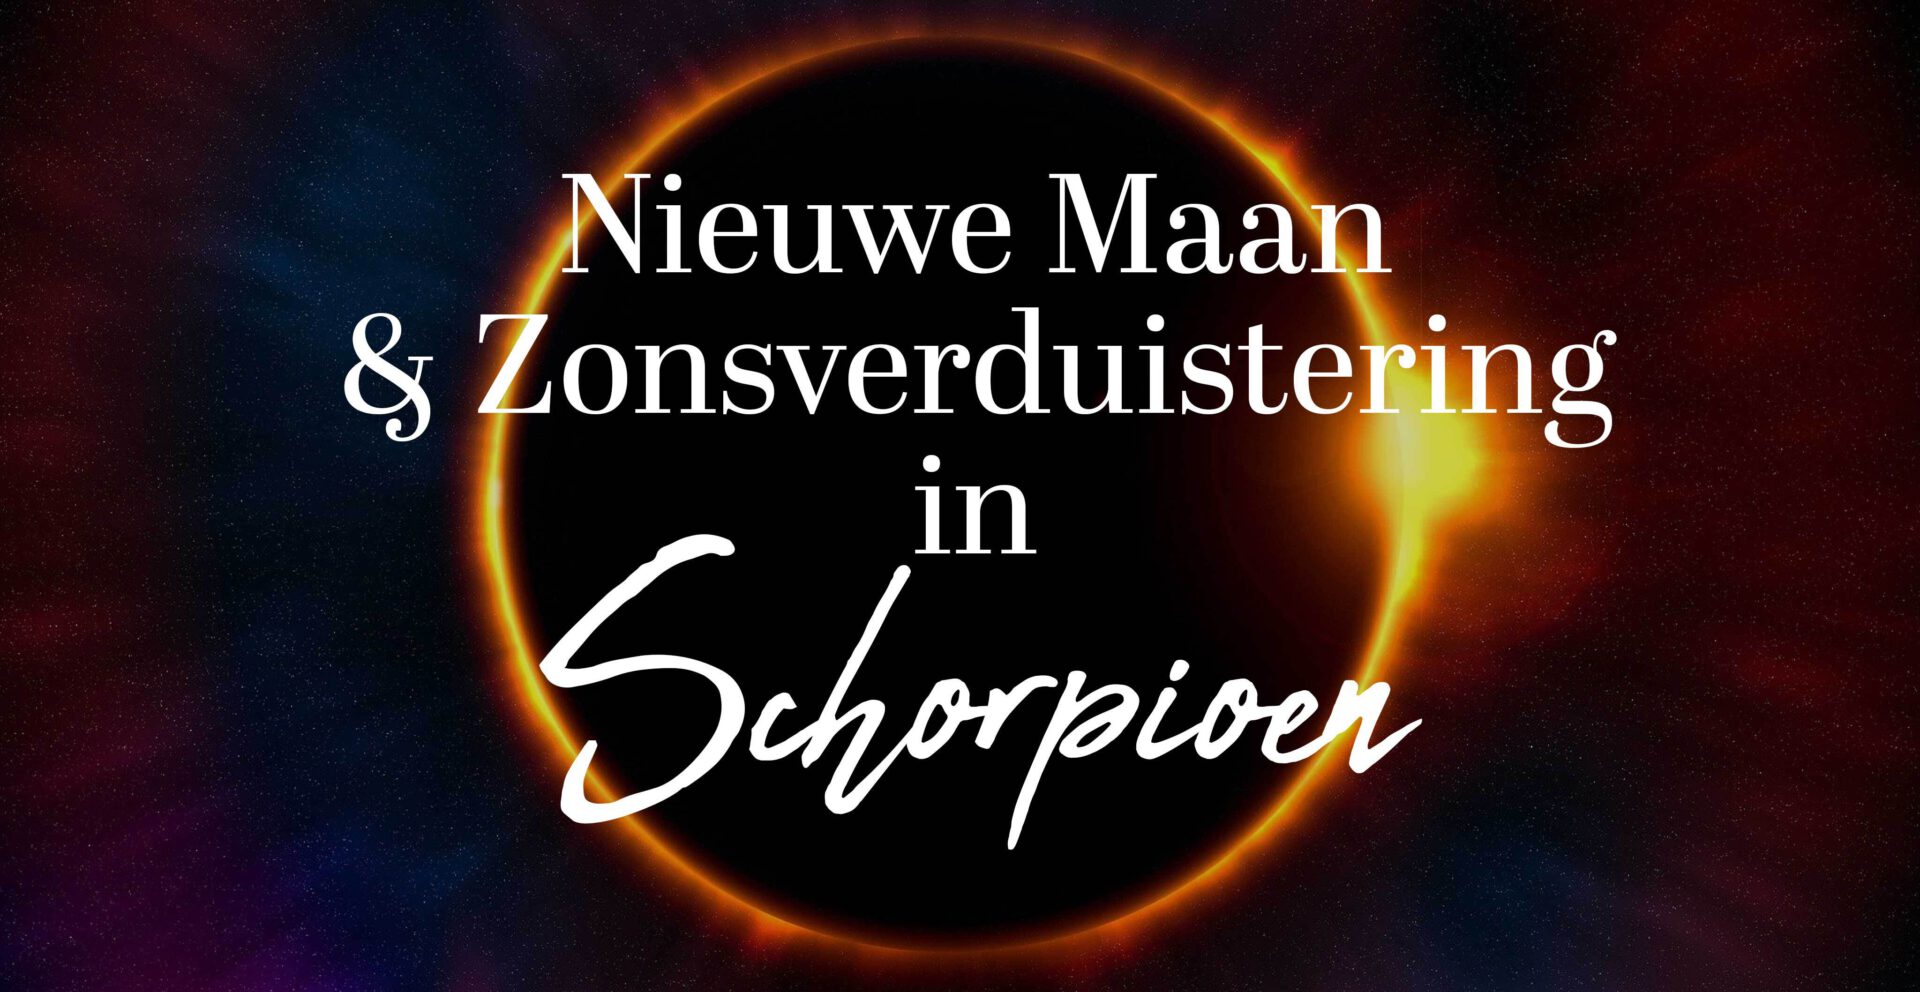 De Nieuwe Maan & Zonsverduistering in Schorpioen 2022